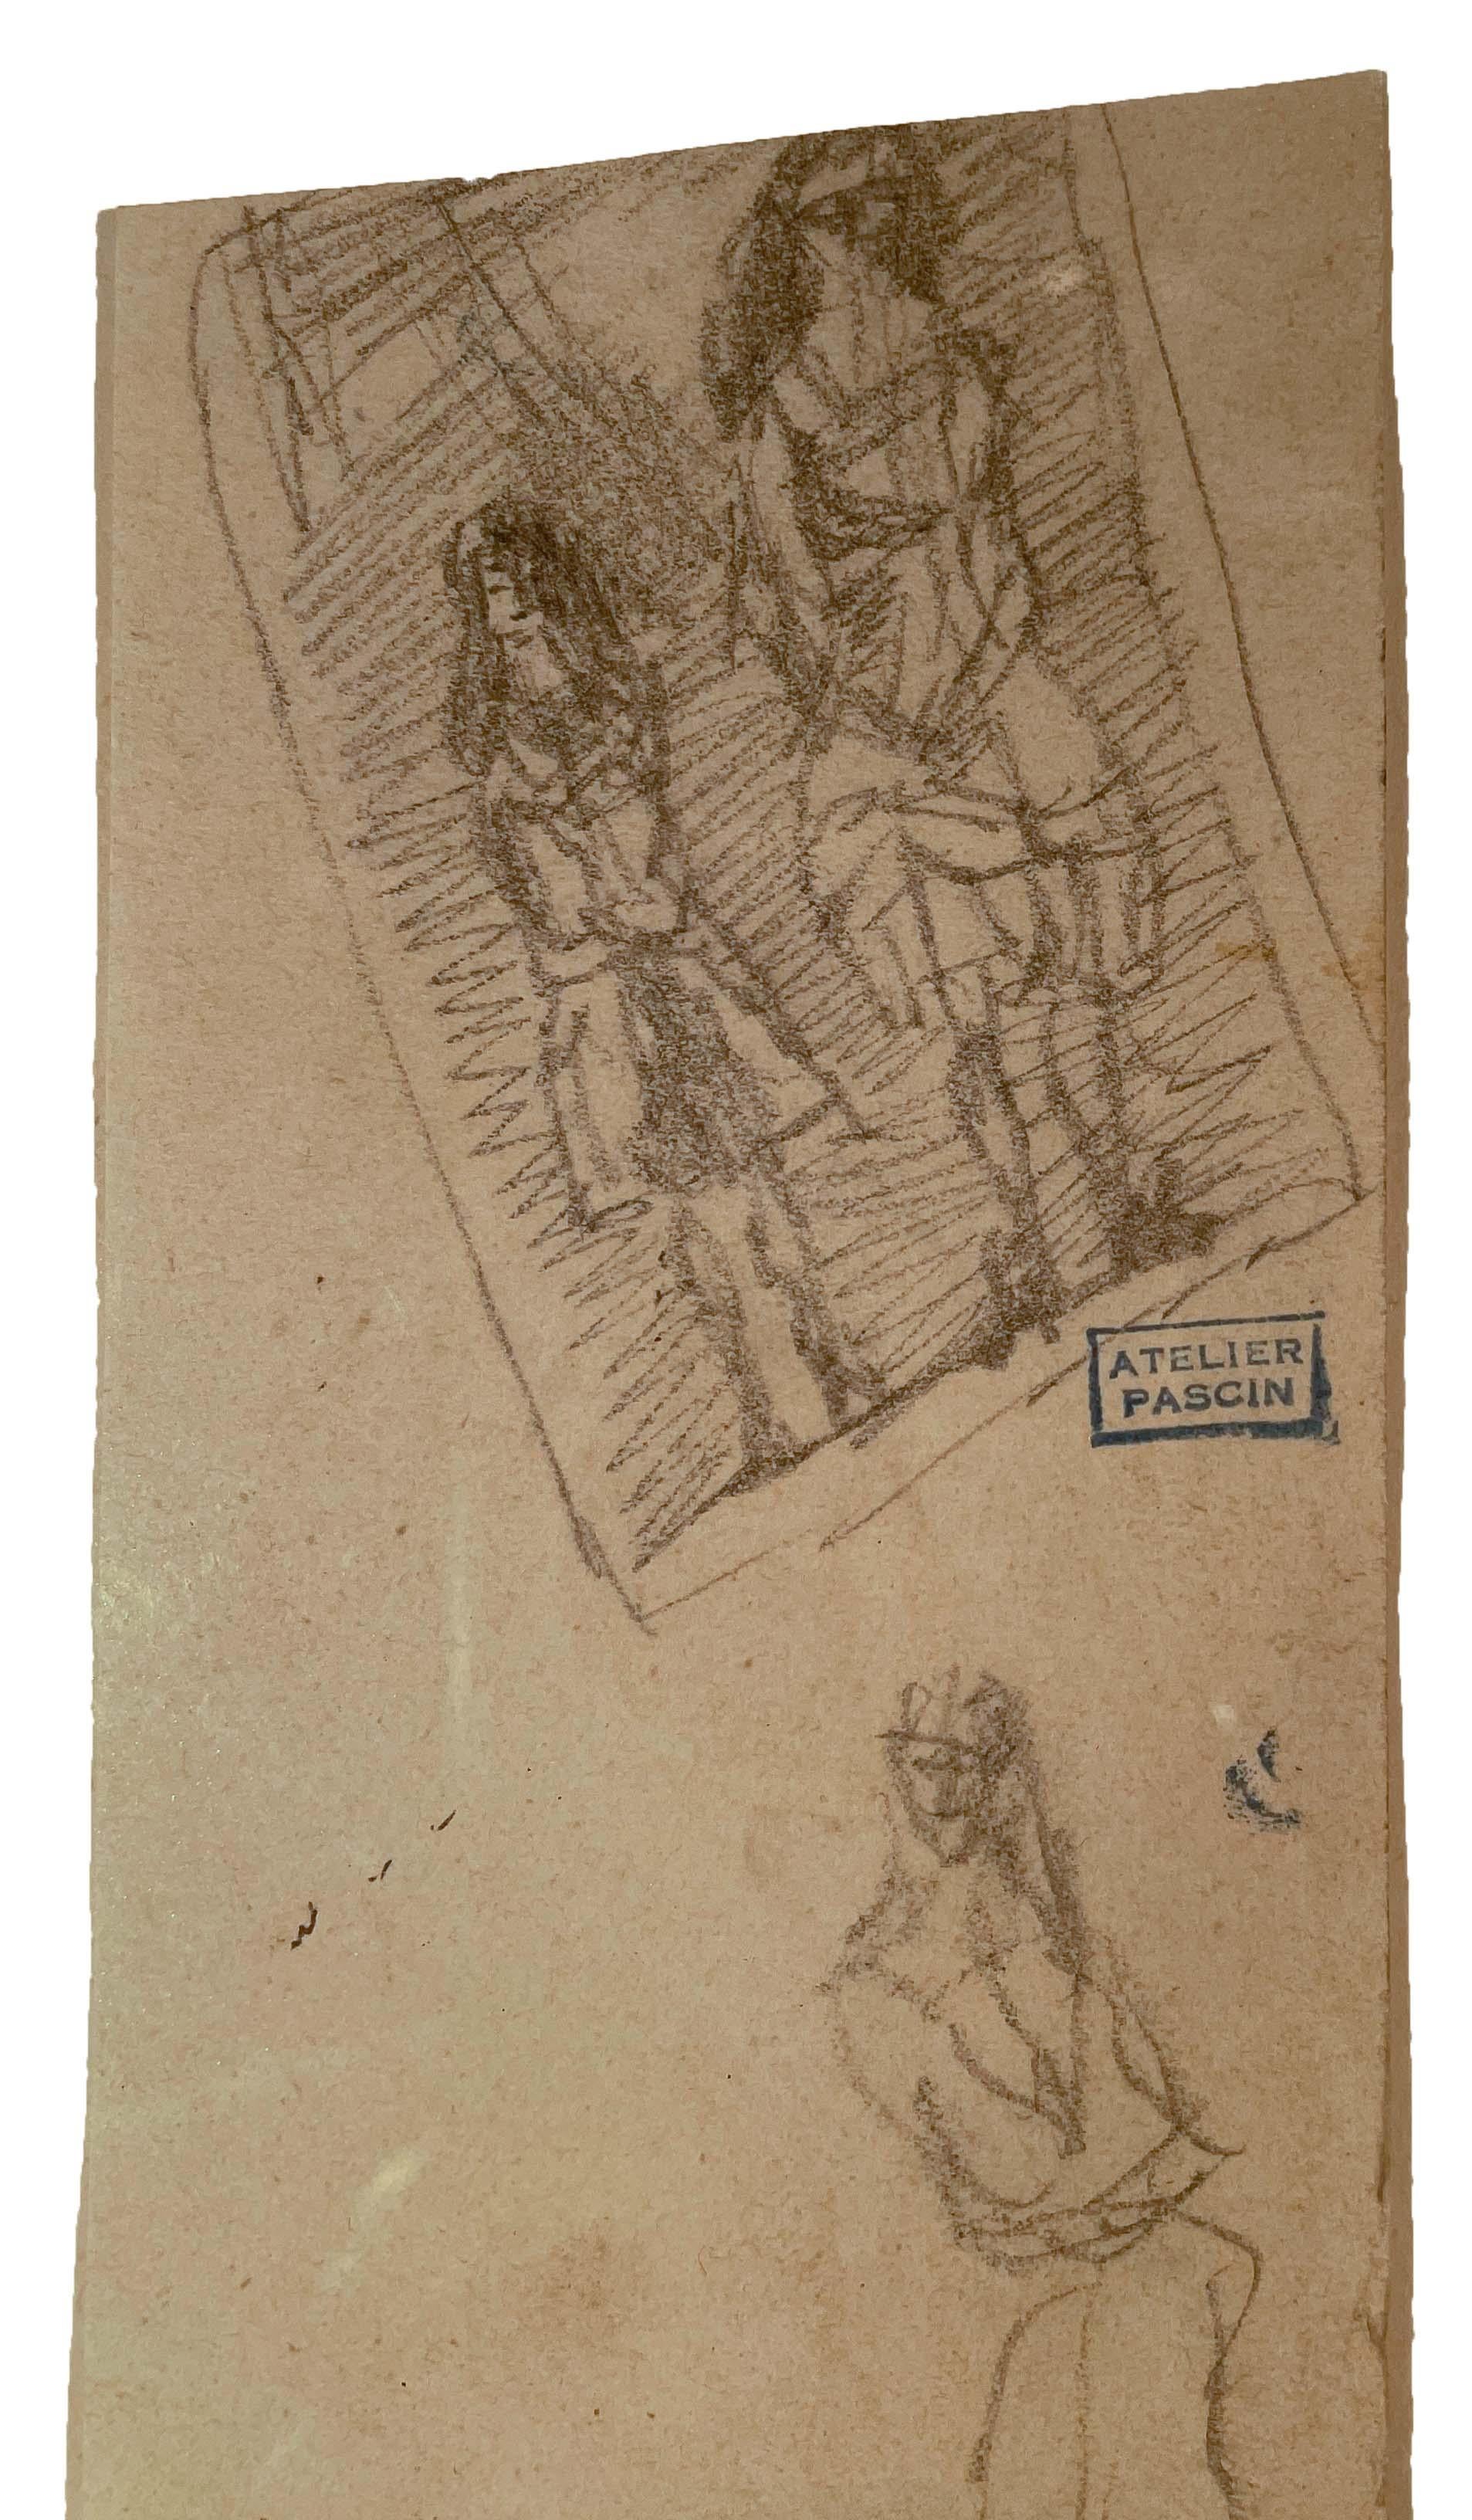 Femmes cubaines par Jules Pascin (1885-1930)
Crayon sur papier
6 ¾ x 2 ⅞ pouces non encadré (17,145 x 7,3152 cm) 
14 ¼ x 10 ½ pouces encadré (36.195 x 26.67 cm)
Timbre de succession au milieu à gauche

Description :
Jules Pascin était un peintre